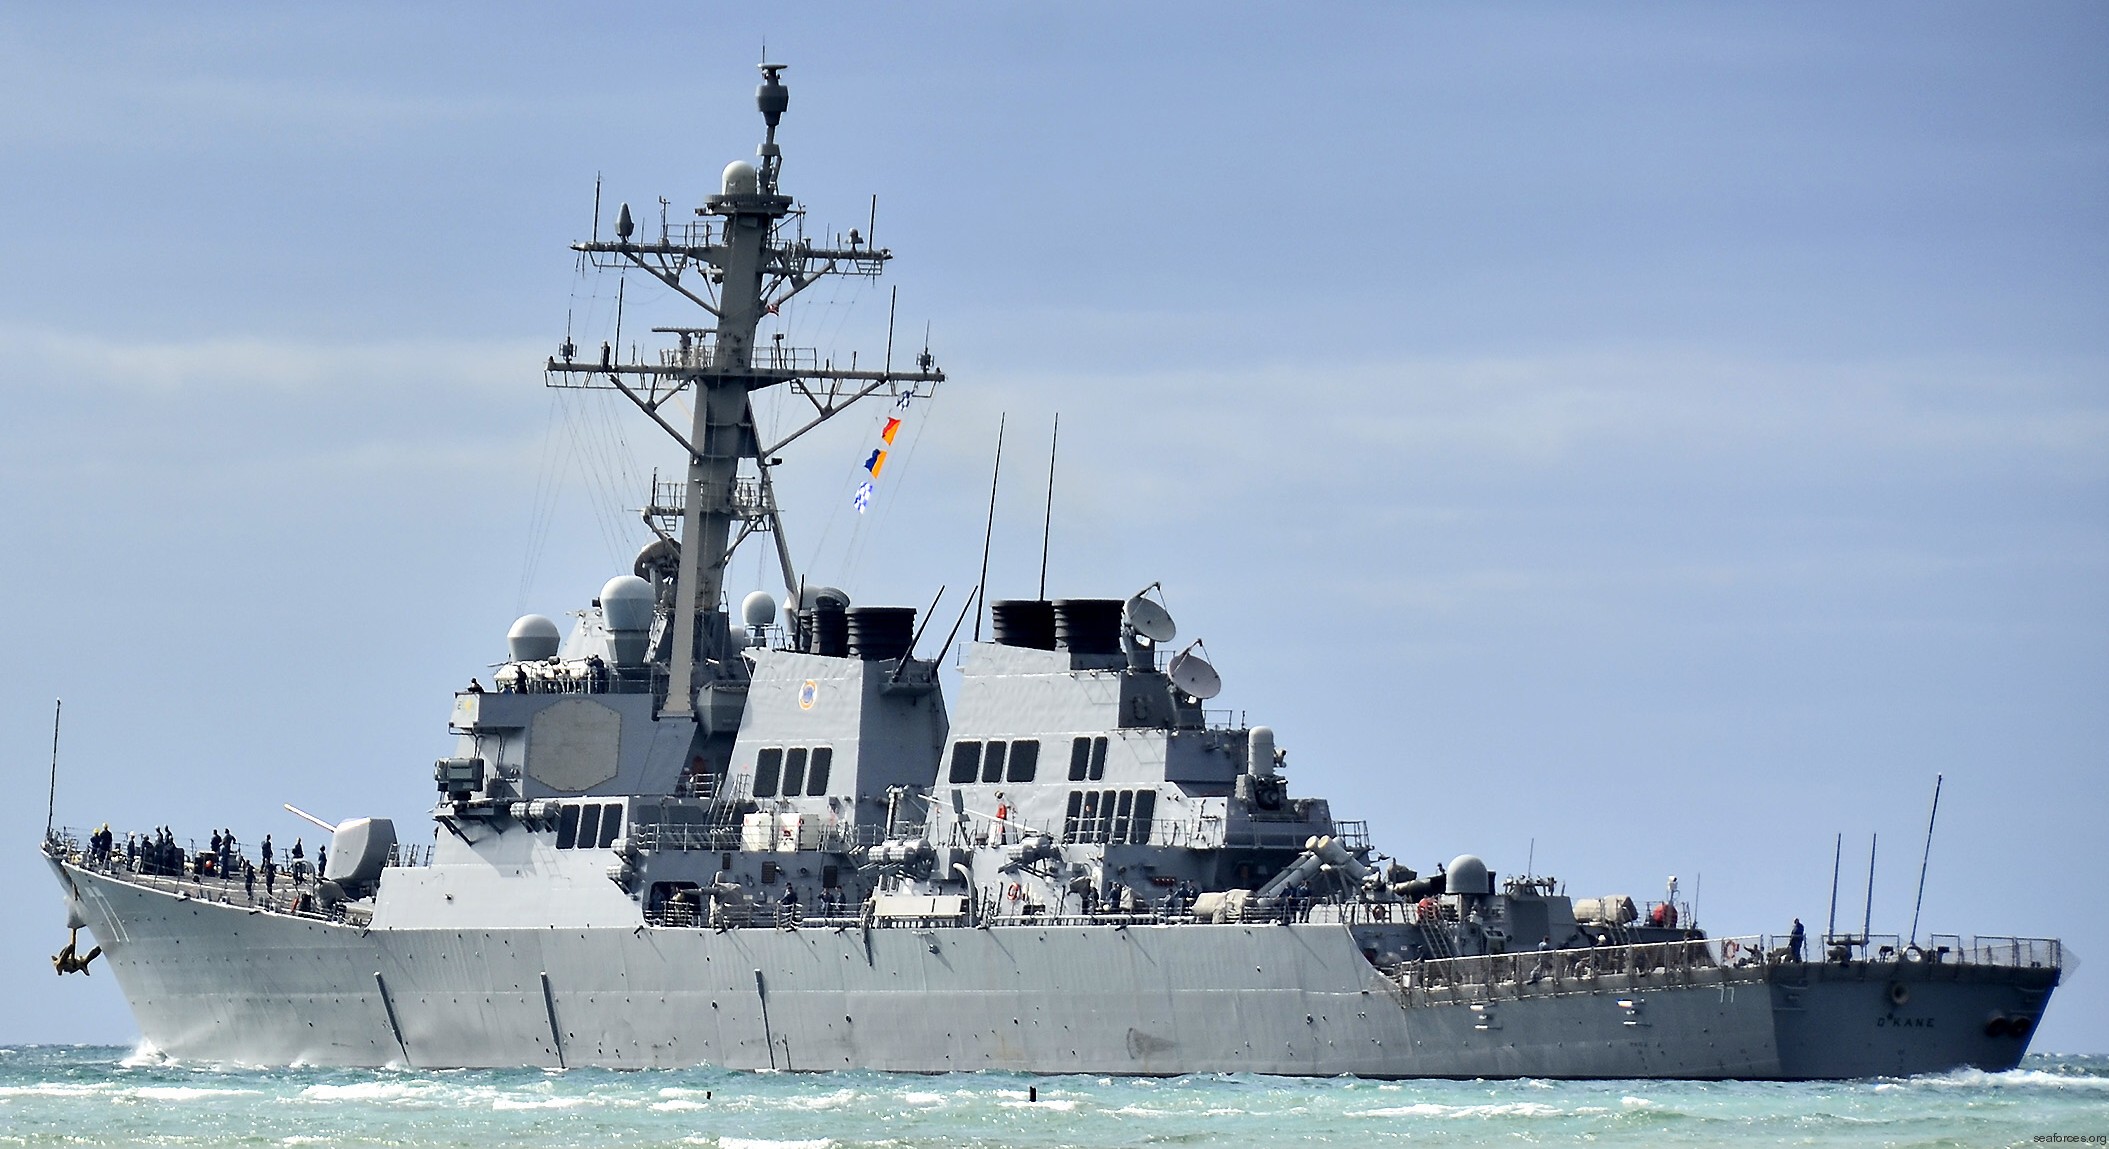 ddg-77 uss o'kane guided missile destroyer arleigh burke class navy aegis 15 exercise koa kai 2014